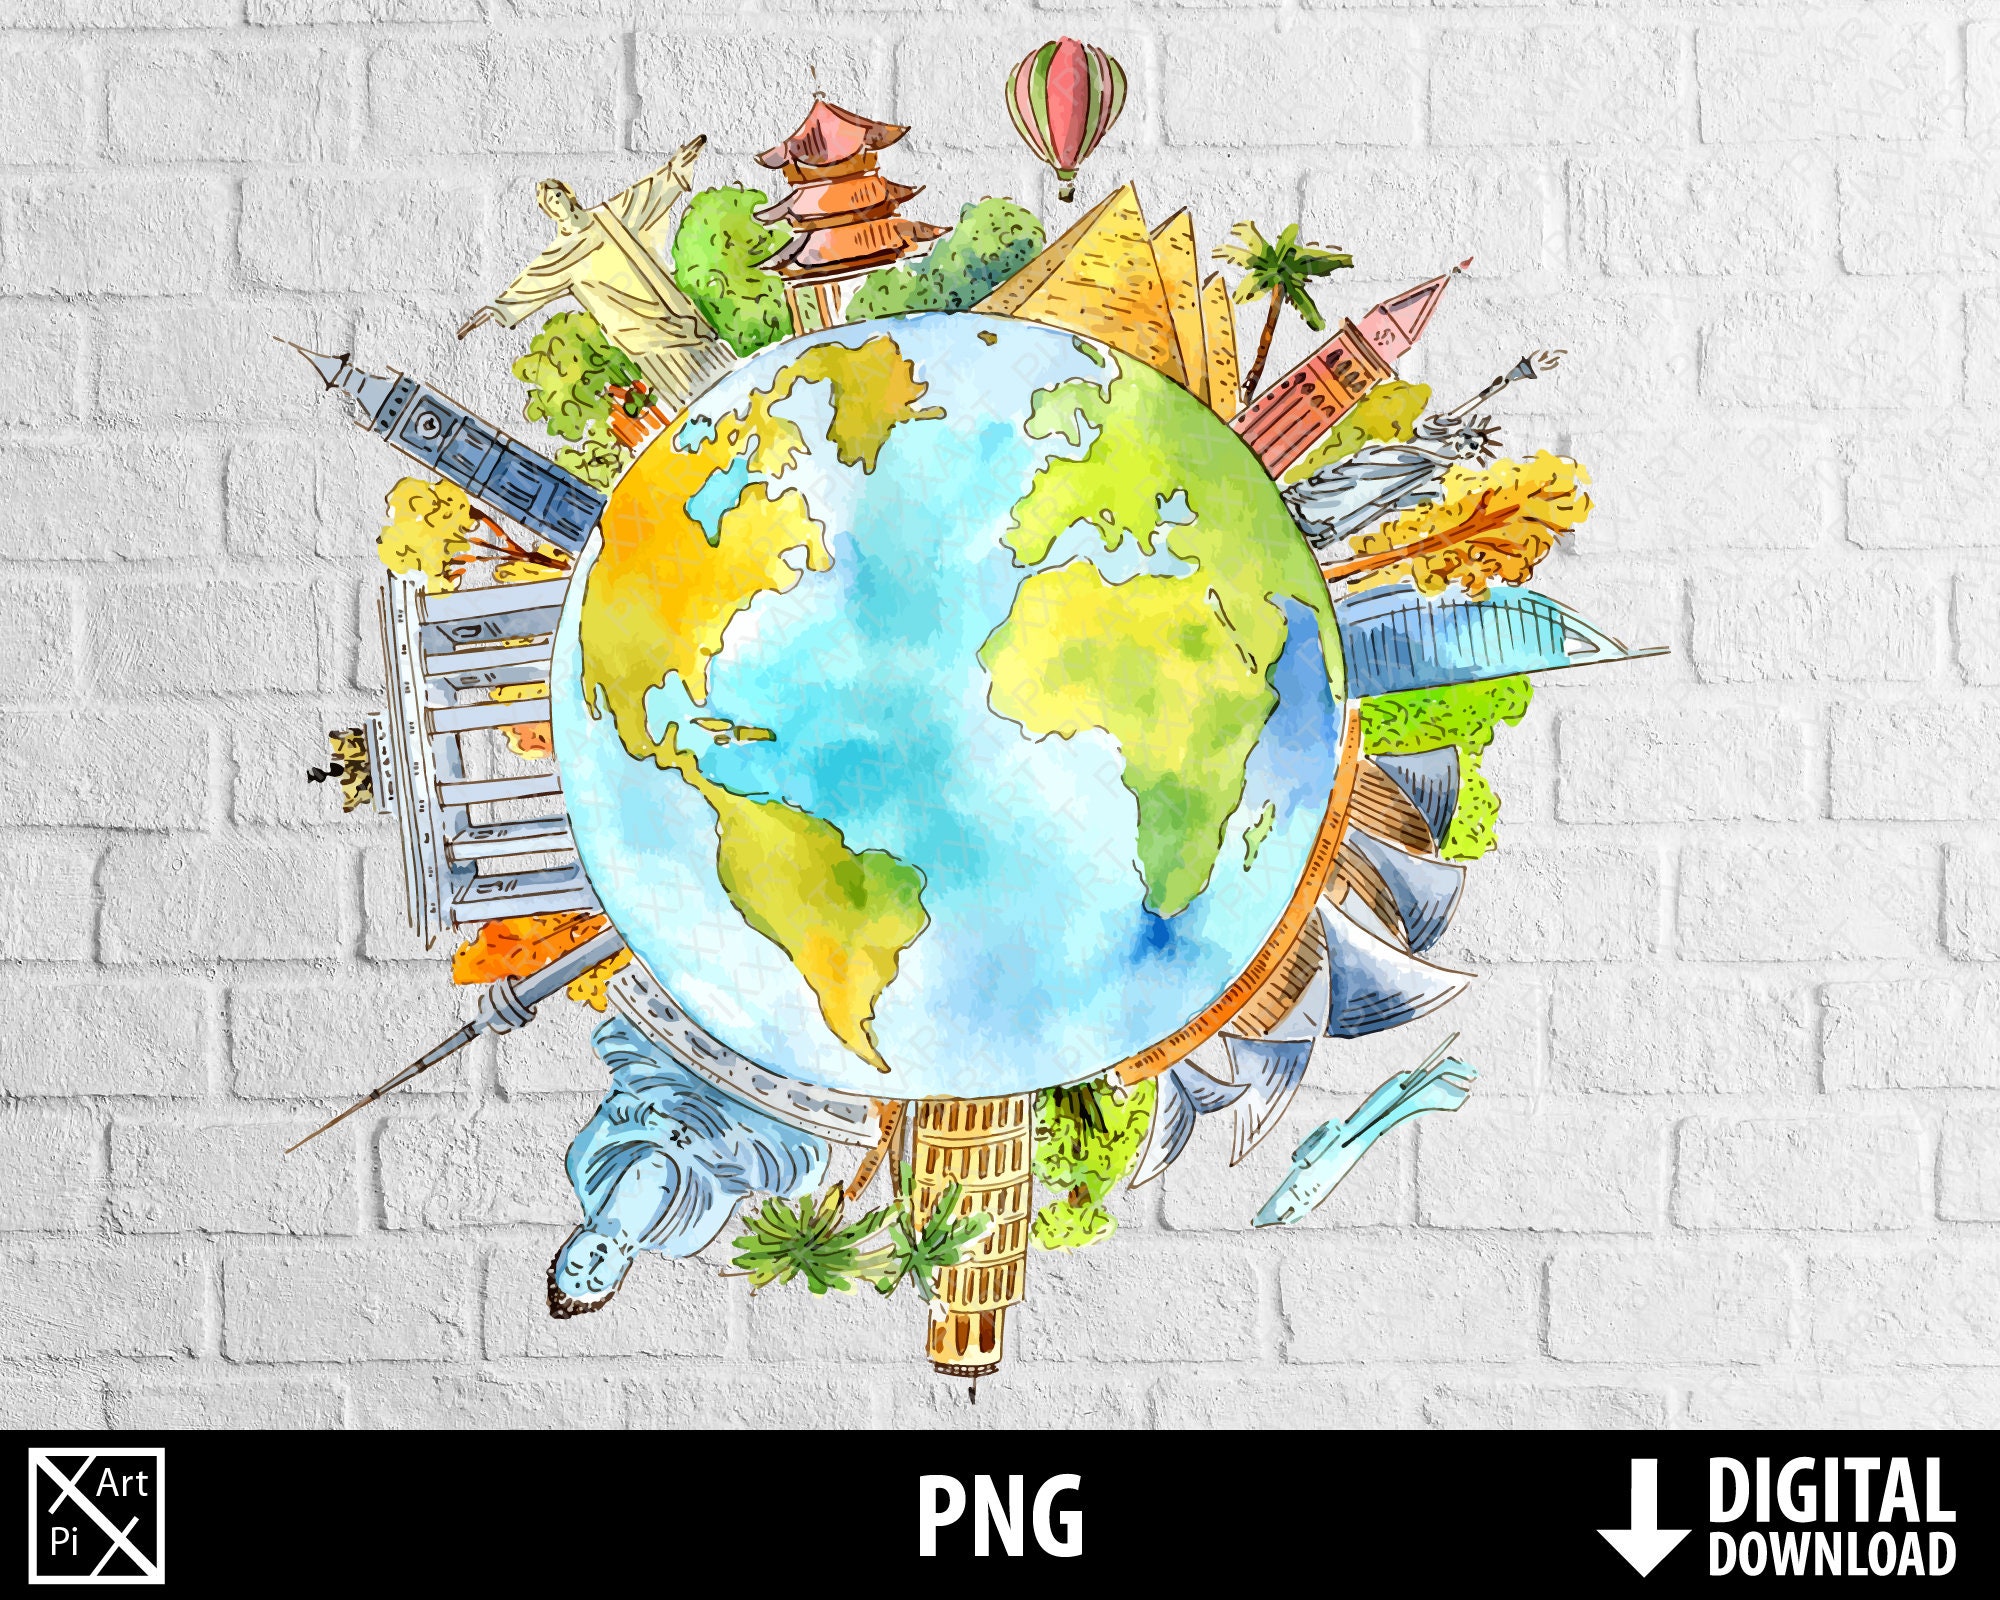 50 School Bag Clipart Travel Digital Illustrations PNG Cute 